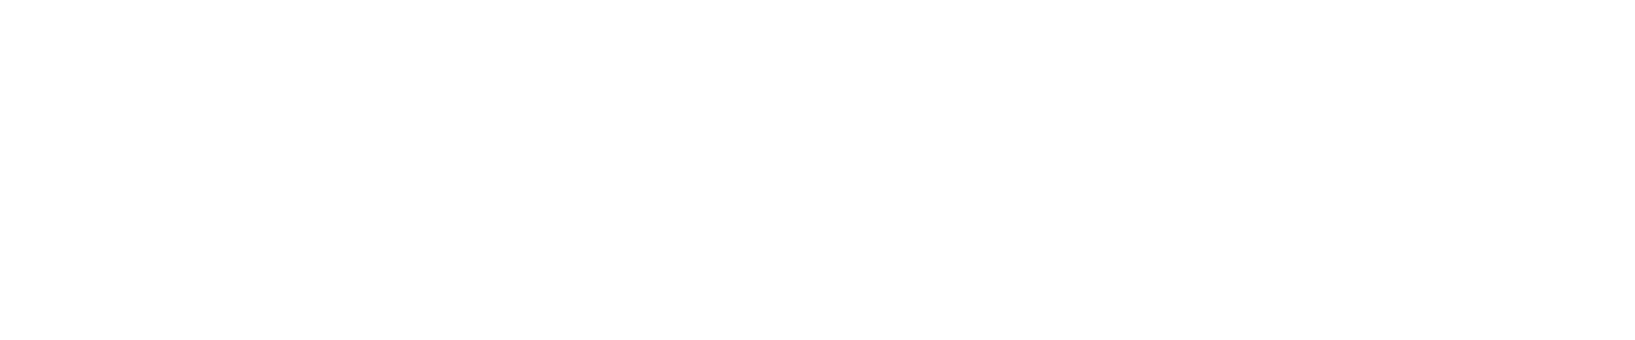 Markforged logo grand pour les fonds sombres (PNG transparent)